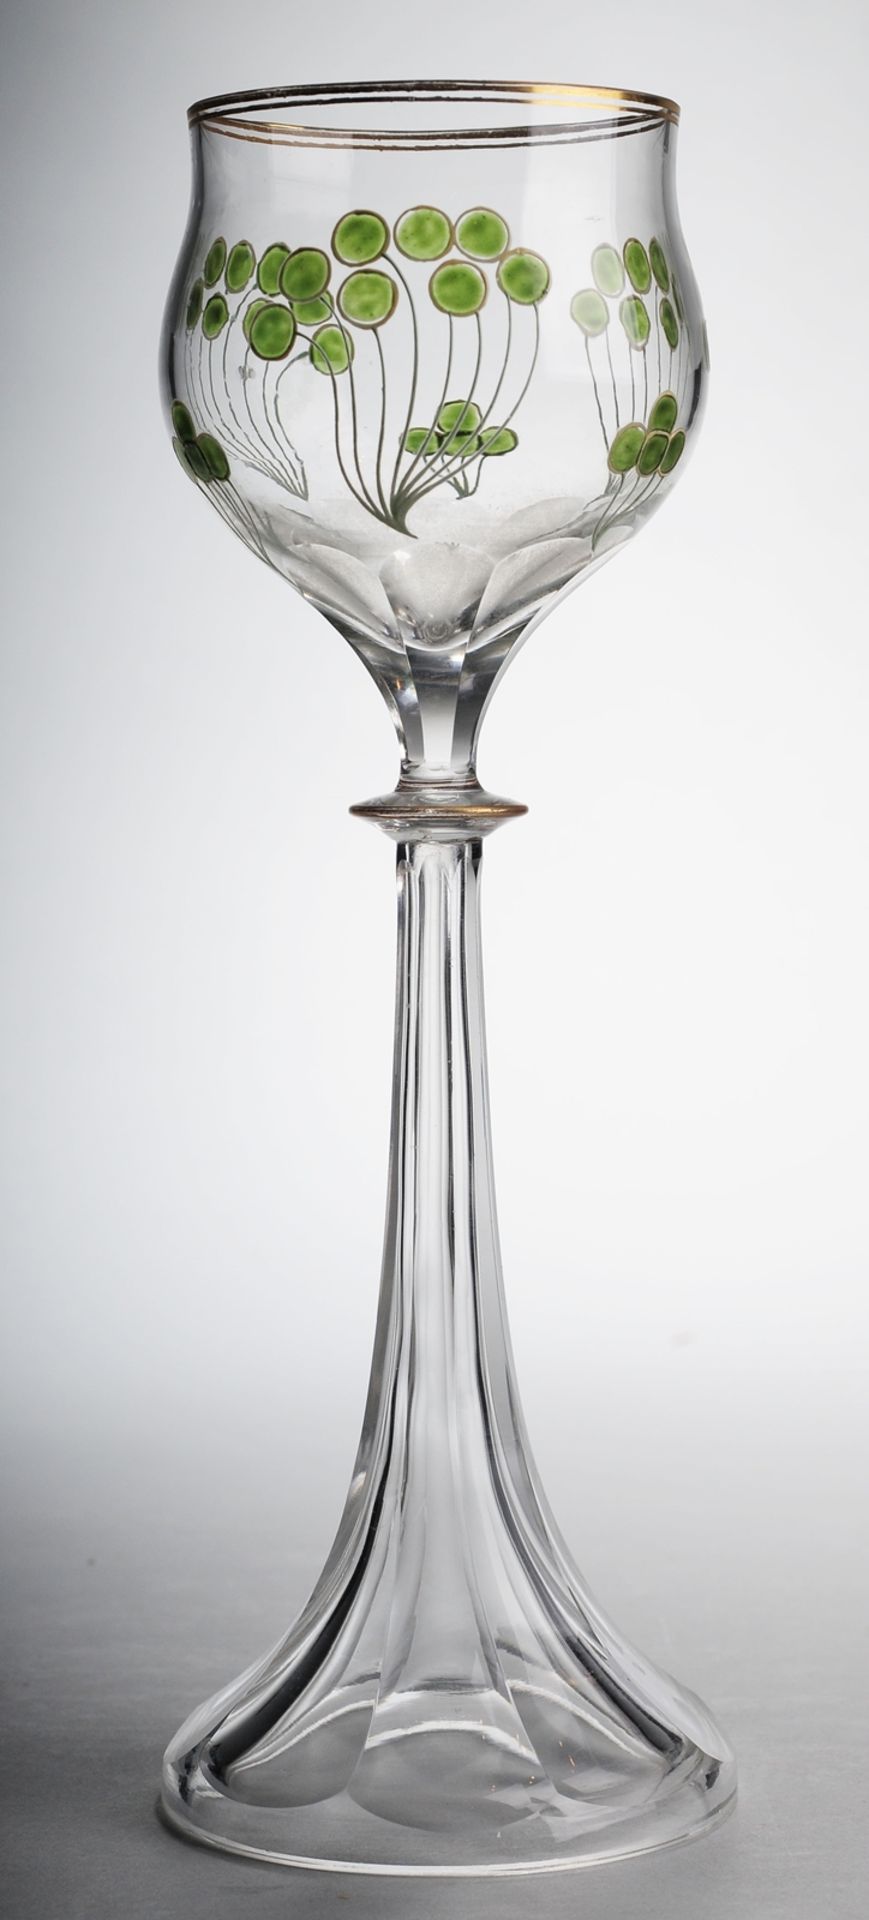 Jugendstil-WeinglasFarbloses Glas. Formgeblasen u. geschliffen. Trichterförmiger, facettiert